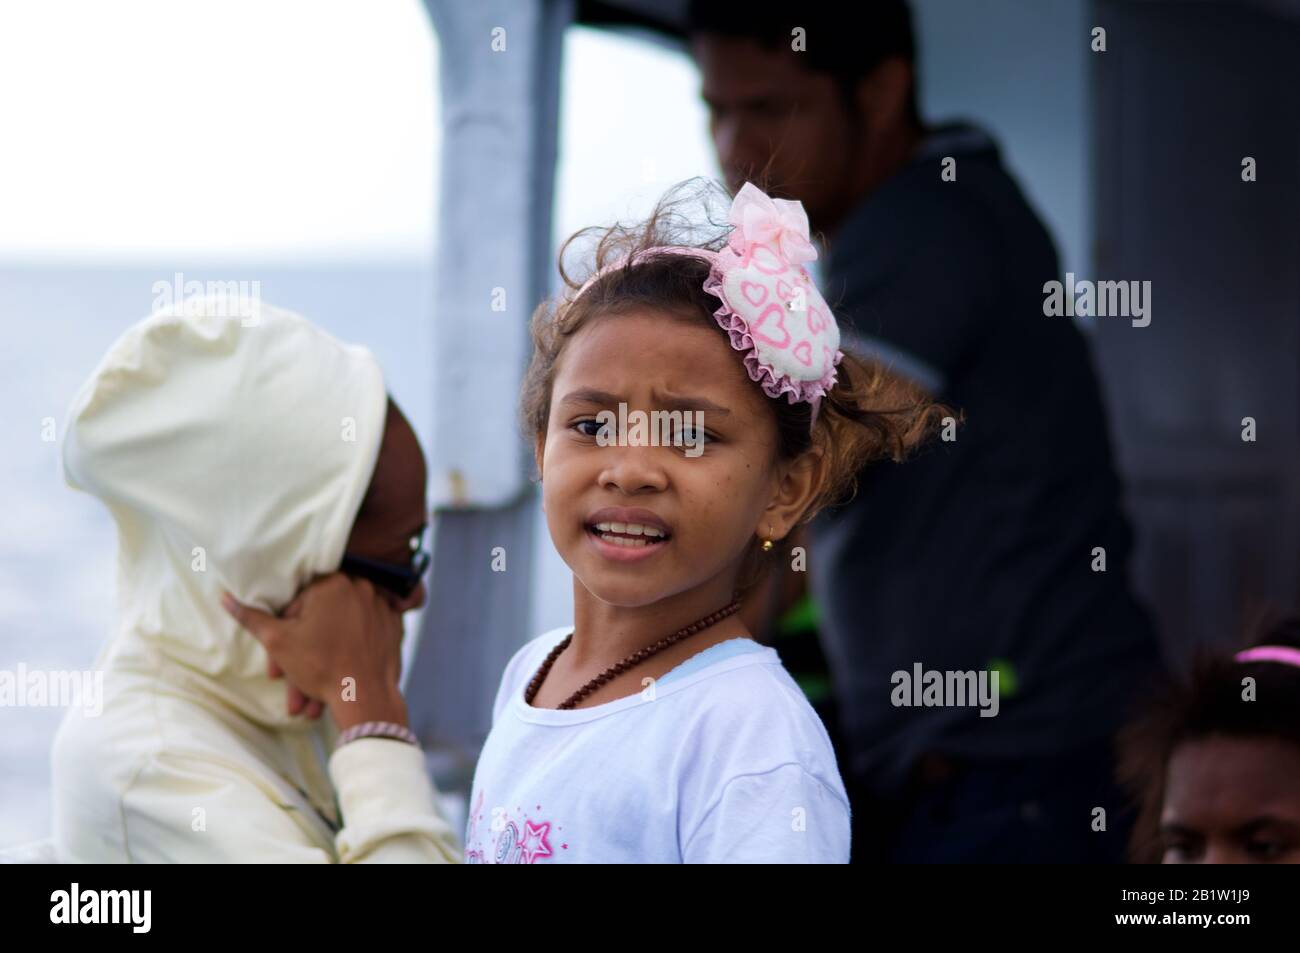 Indonesisches kleines Mädchen, Bootspassagier für Raja Ampat Island - Occidental Papua, Indonesien Stockfoto